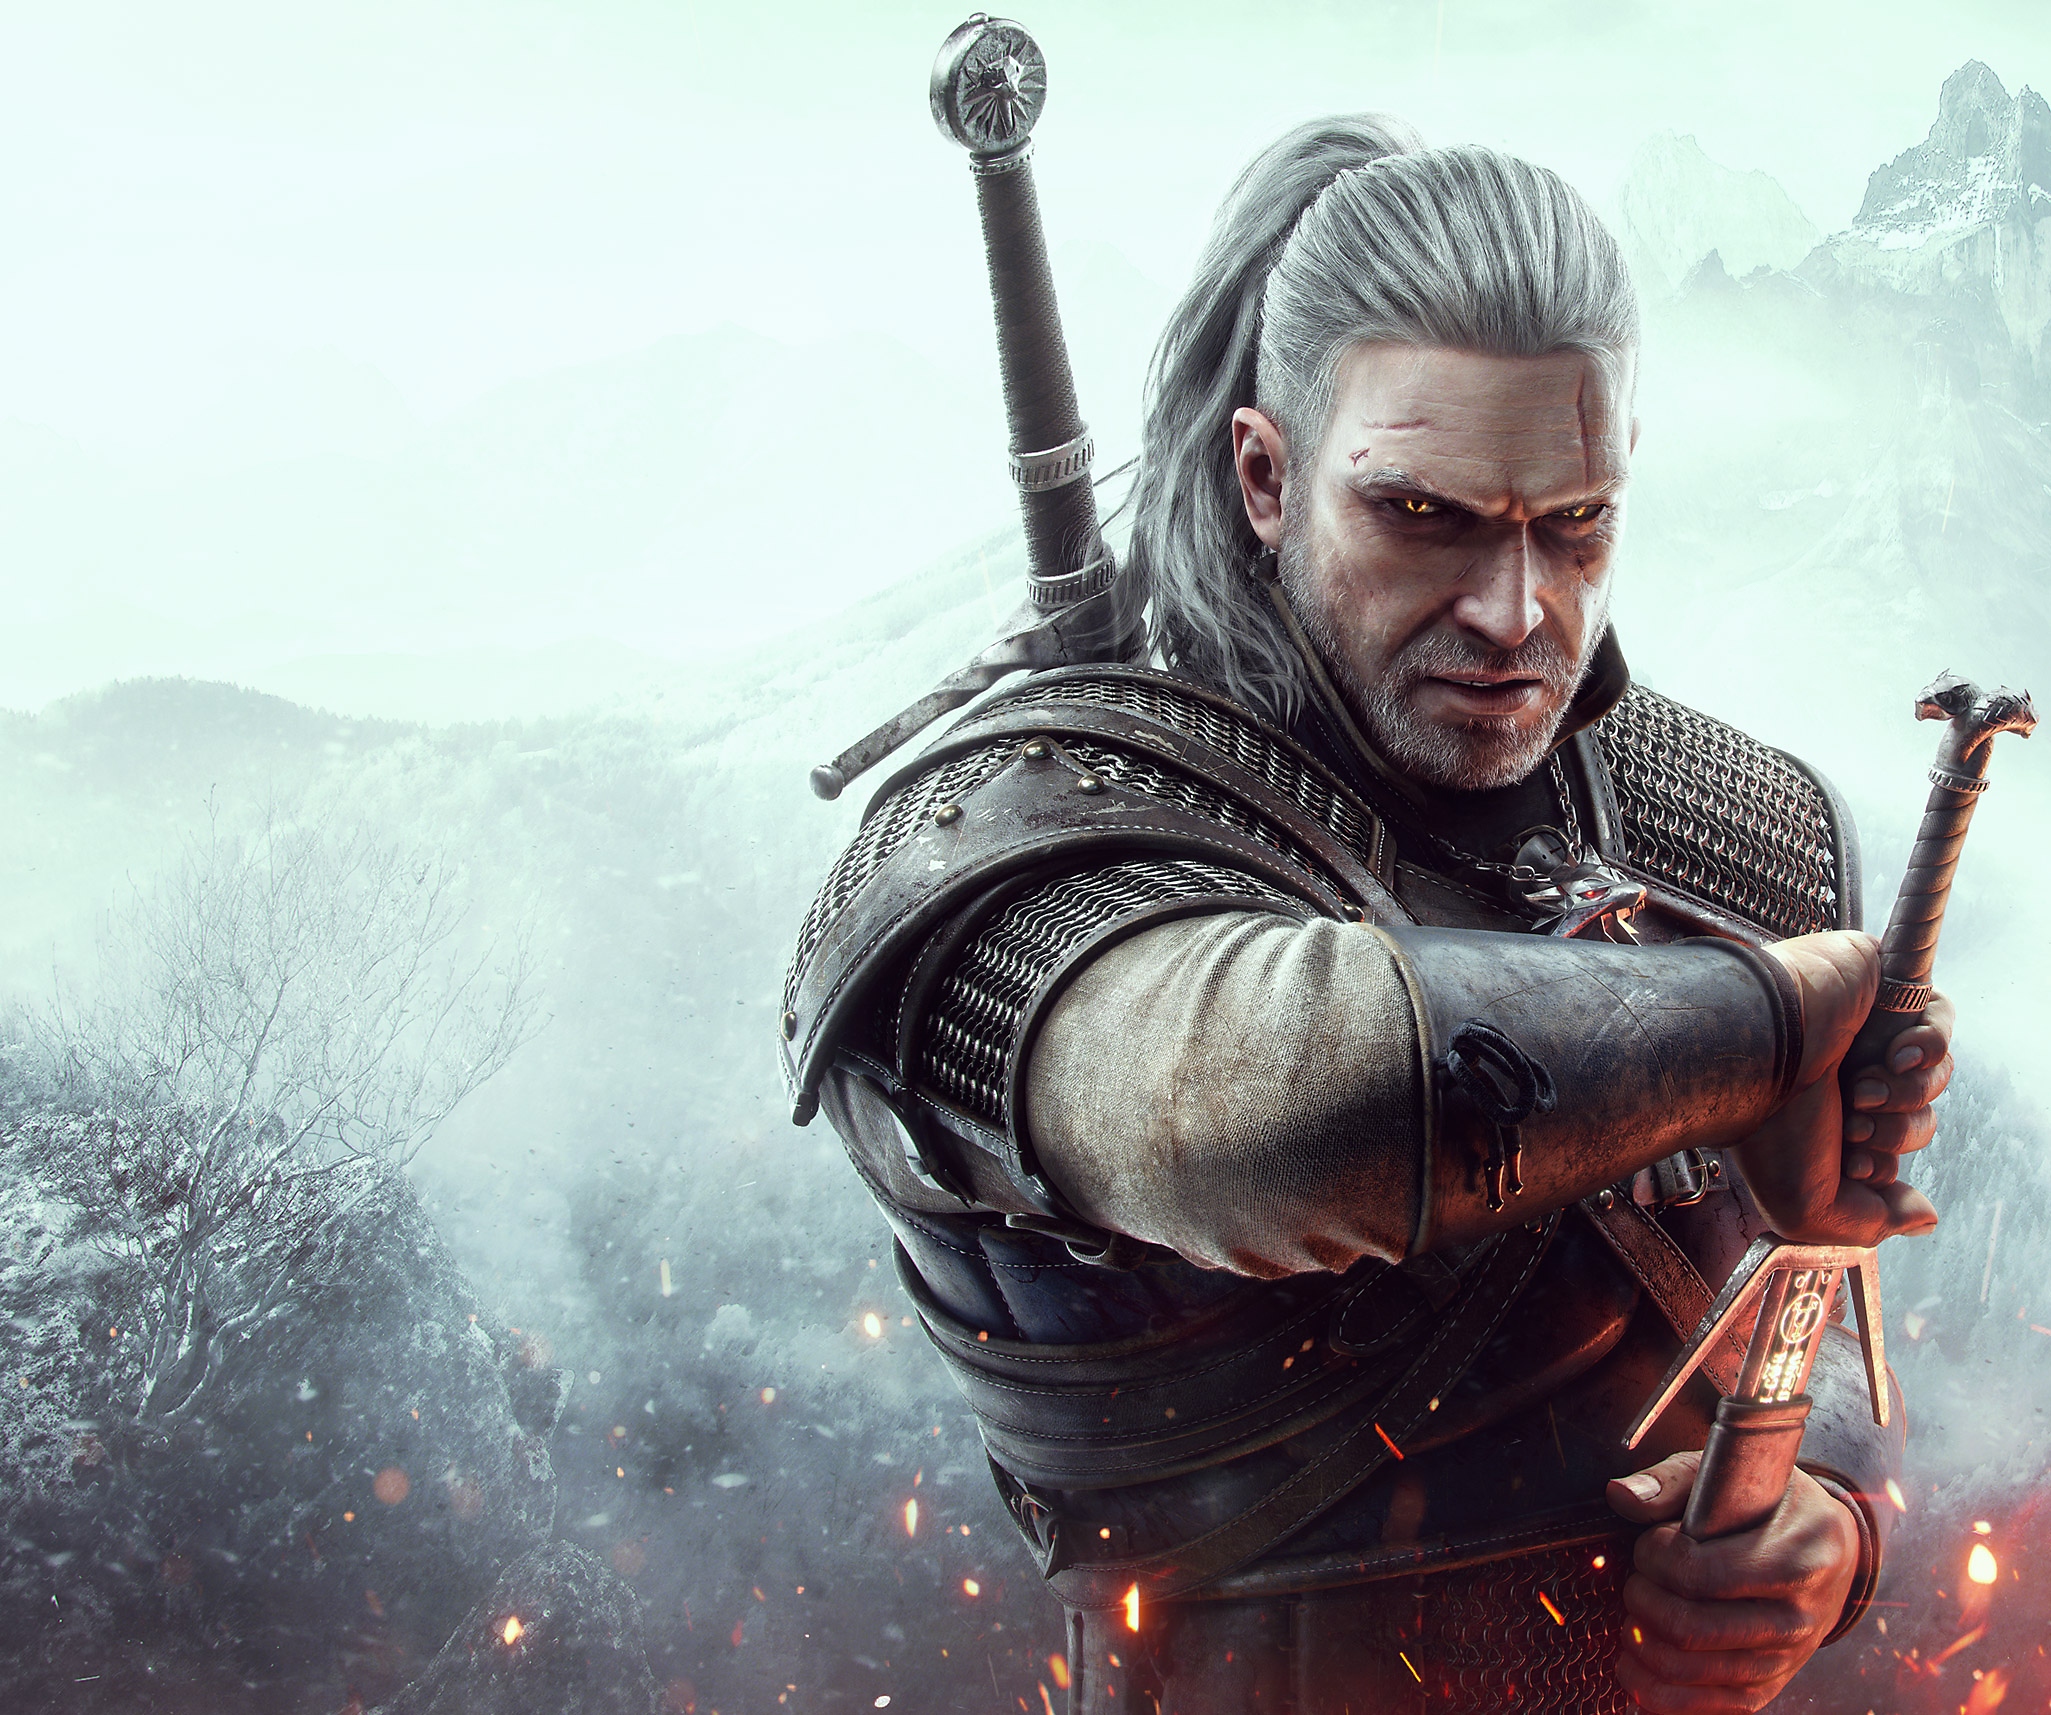 Immagine principale di The Witcher 3 che mostra il personaggio principale Geralt di Rivia che sfodera la spada.